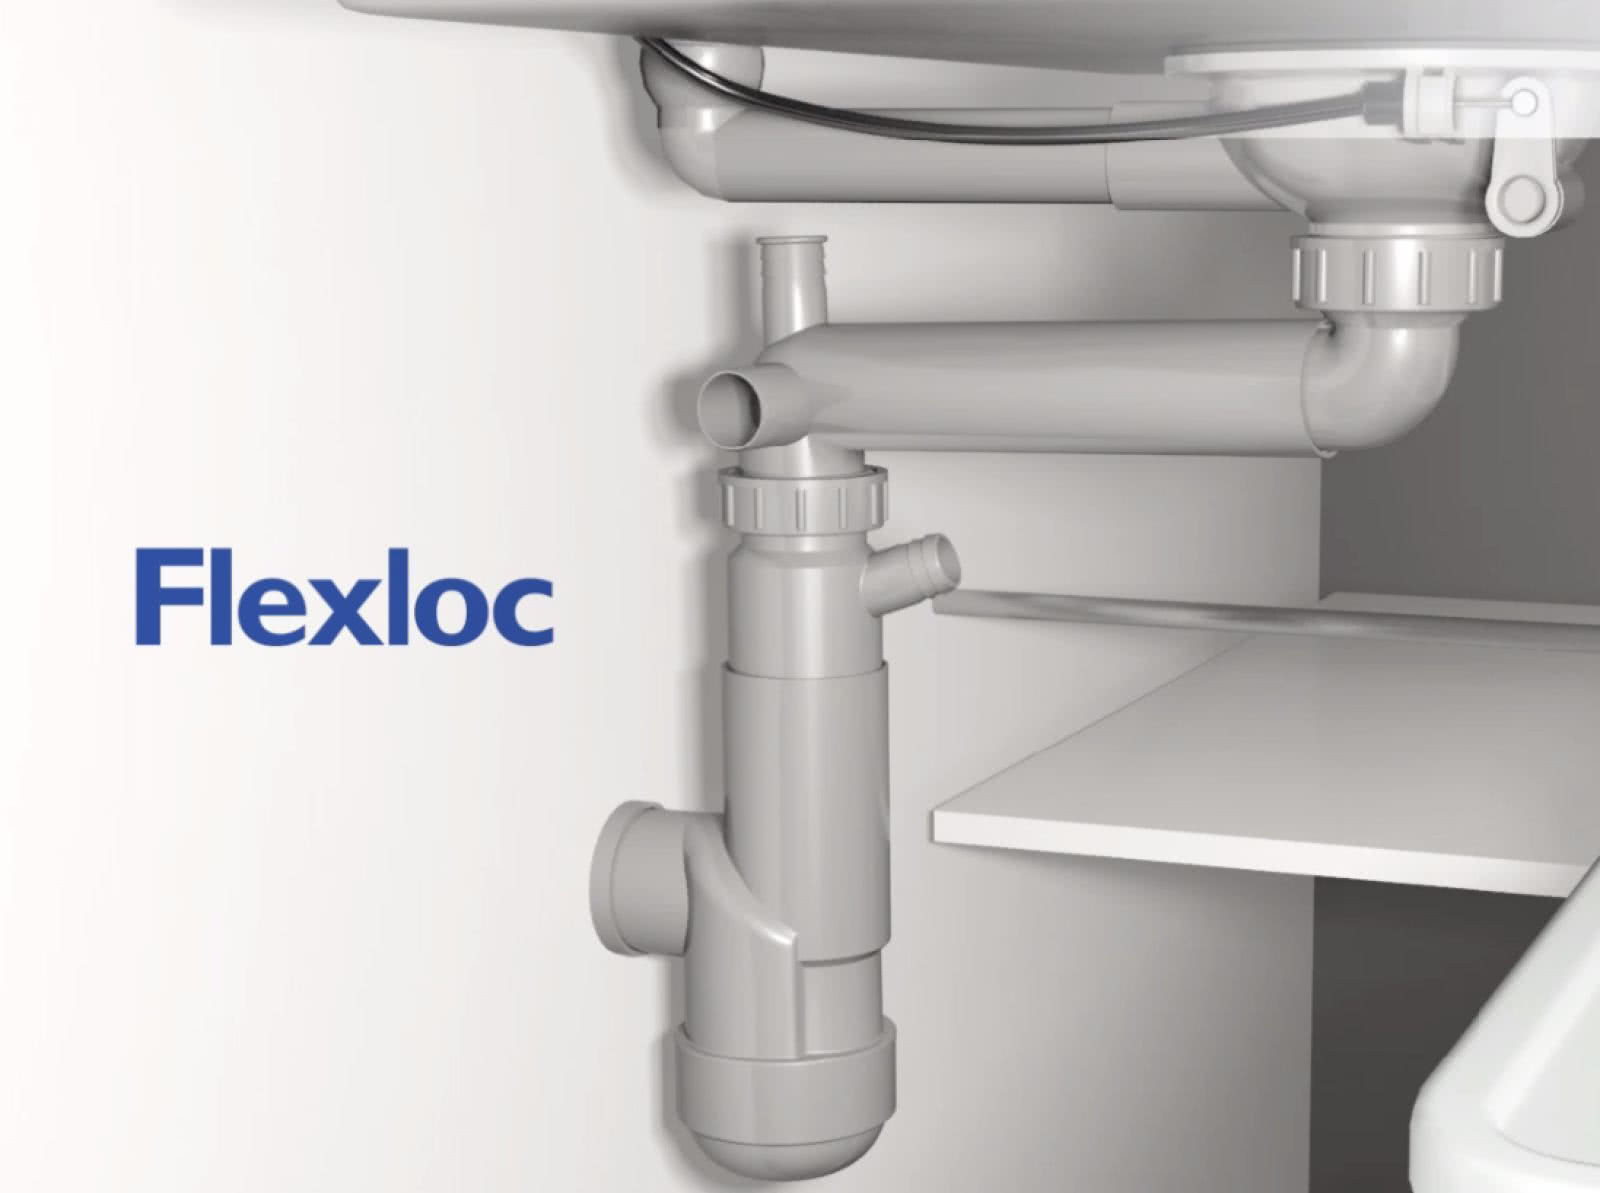 Syfon Flexloc, który wg danych producenta, oszczędza do 40% miejsca pod zlewem. fot. Prevex